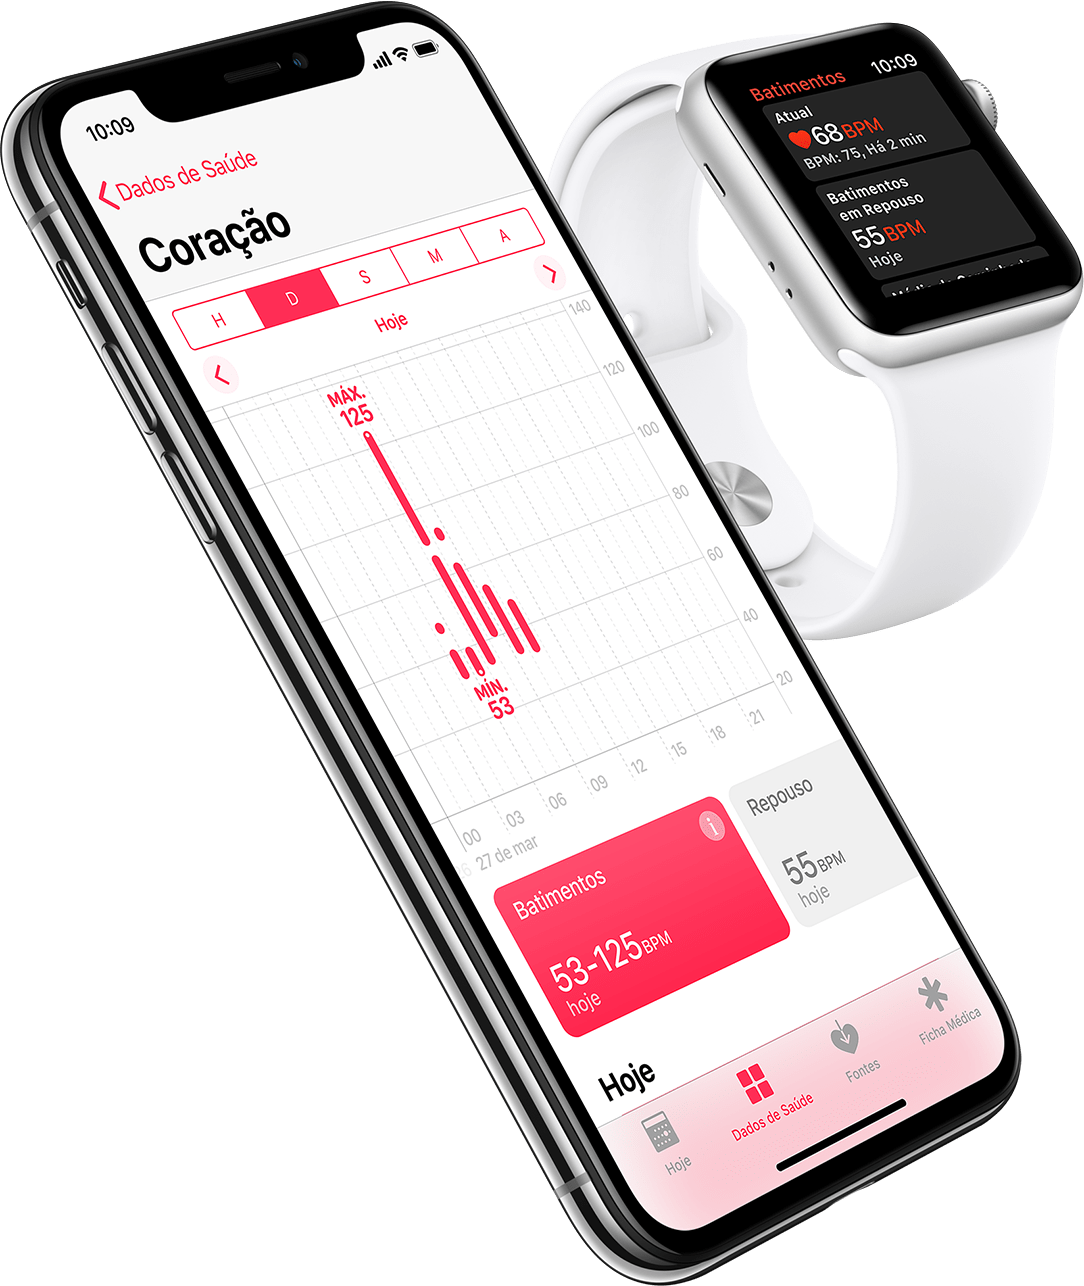 Pemantauan jantung pada iPhone X dan Apple Watch Series 3